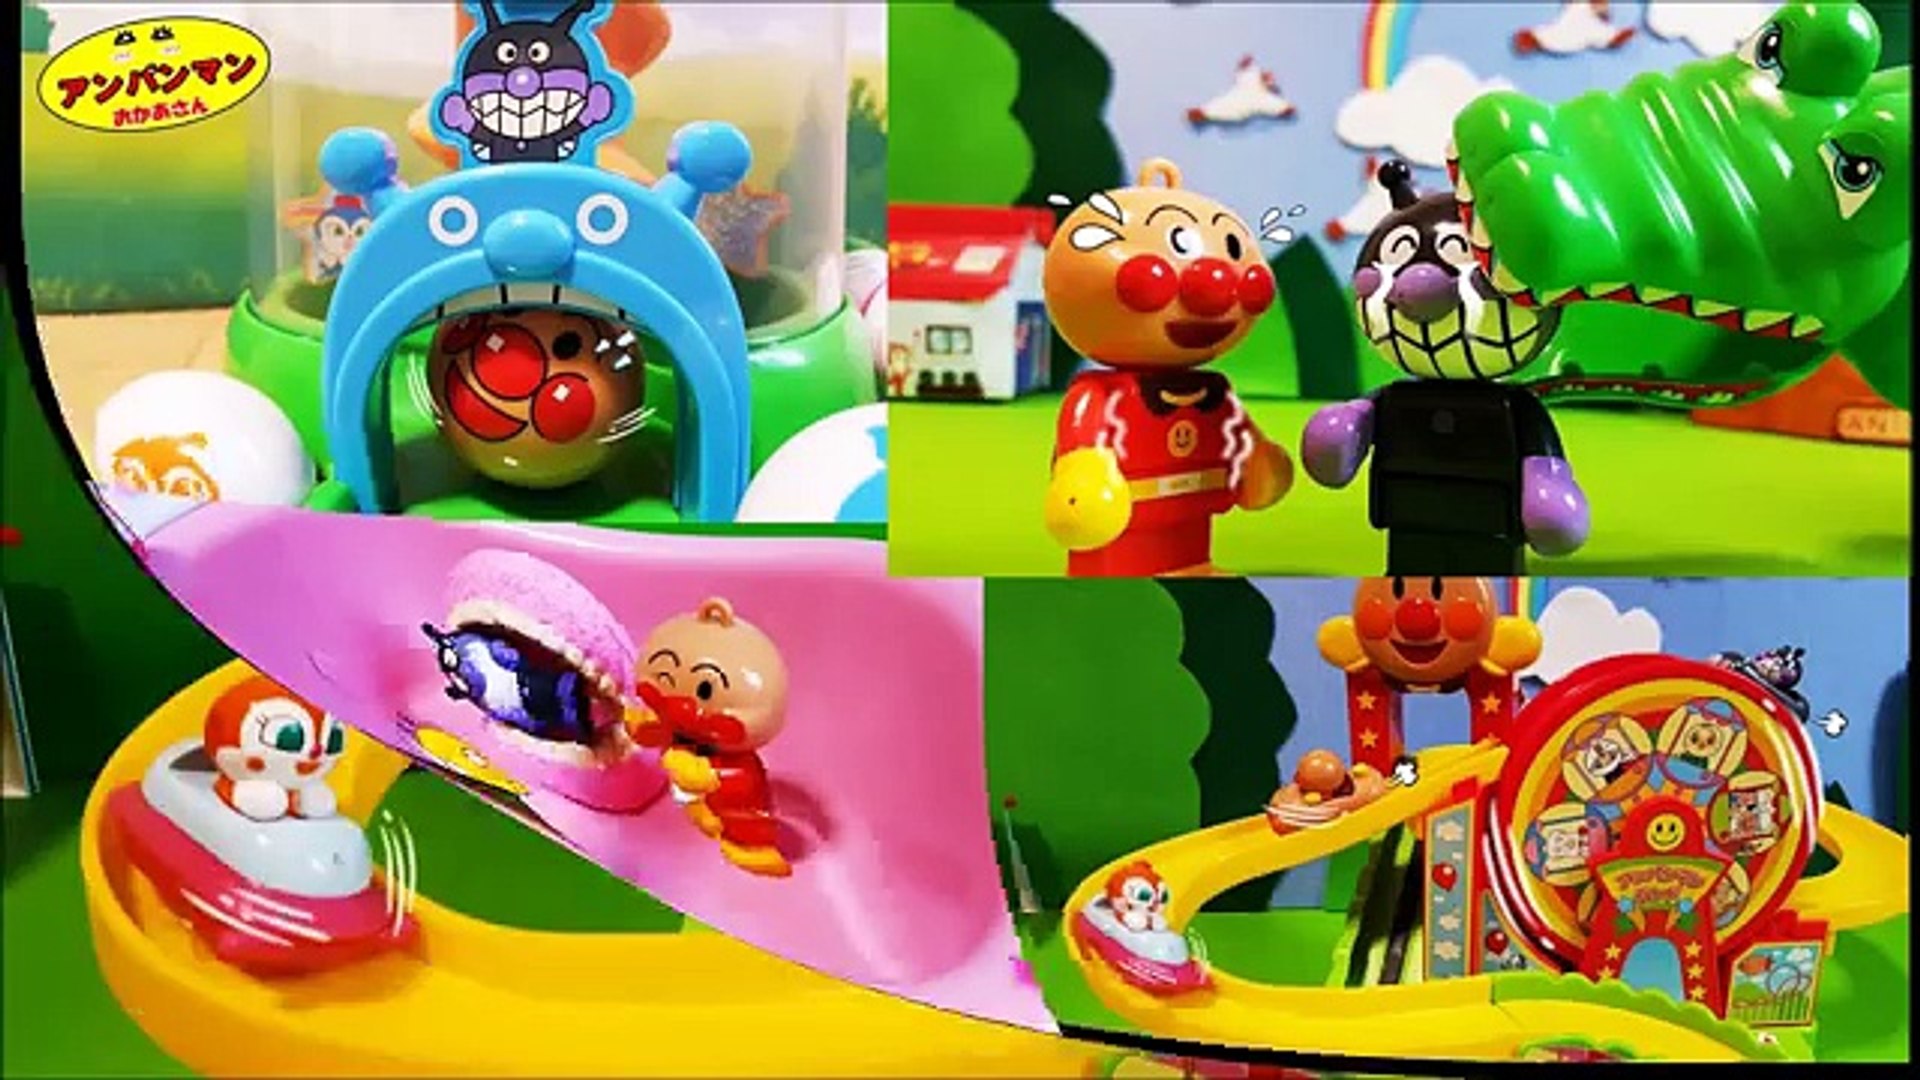 アンパンマン おかあさん アニメおもちゃ 人気動画まとめ連続 Anpanman Toys Dailymotion Video